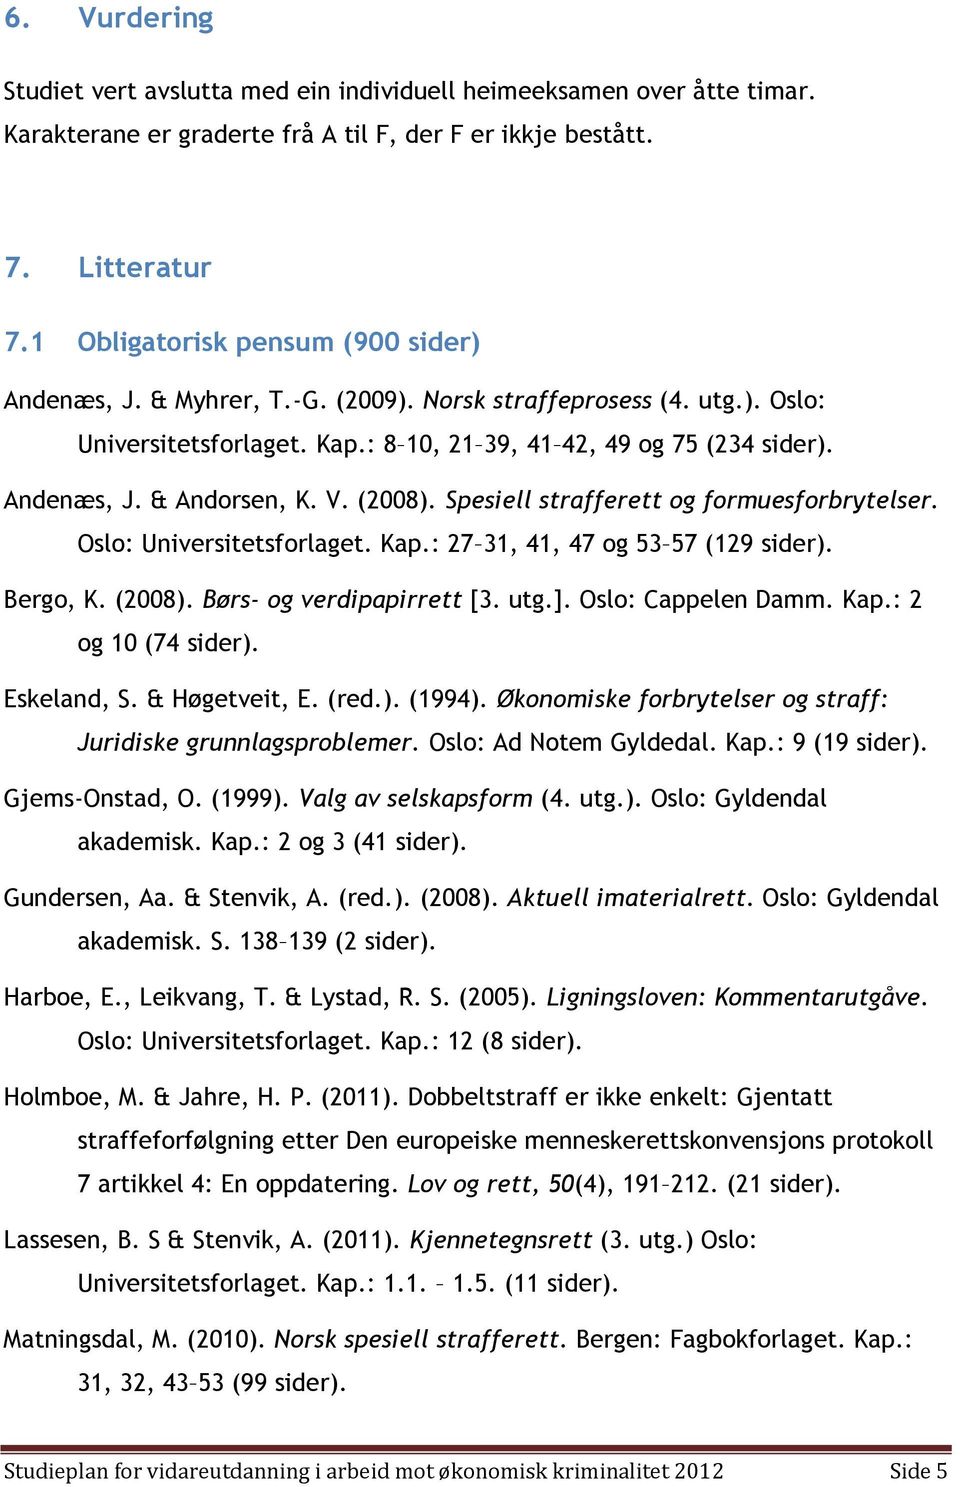 V. (2008). Spesiell strafferett og formuesforbrytelser. Oslo: Universitetsforlaget. Kap.: 27 31, 41, 47 og 53 57 (129 sider). Bergo, K. (2008). Børs- og verdipapirrett [3. utg.]. Oslo: Cappelen Damm.